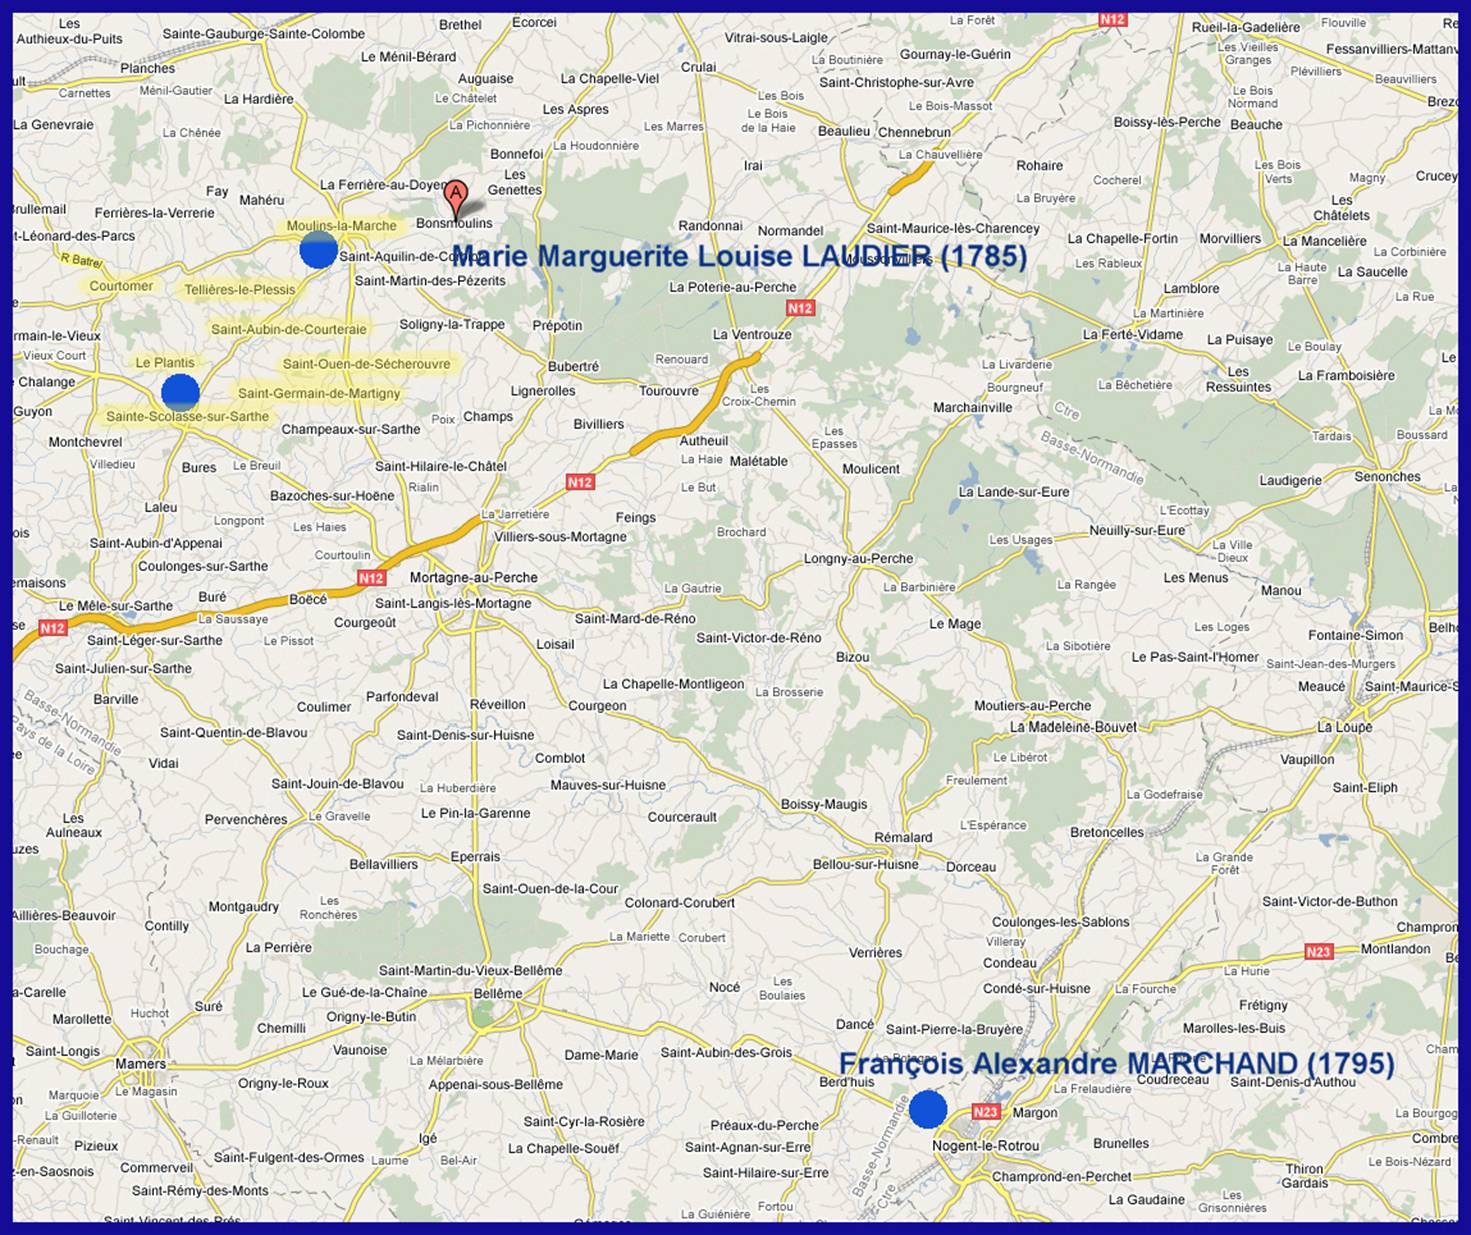 Carte des dpartement de l'Orne et de l'Eure et Loir : Sainte-Scolasse - Moulins la Marche - Nogent le Rotrou - Origine de Franois Alexandre MARCHAND et Marie Louise LAUDIER